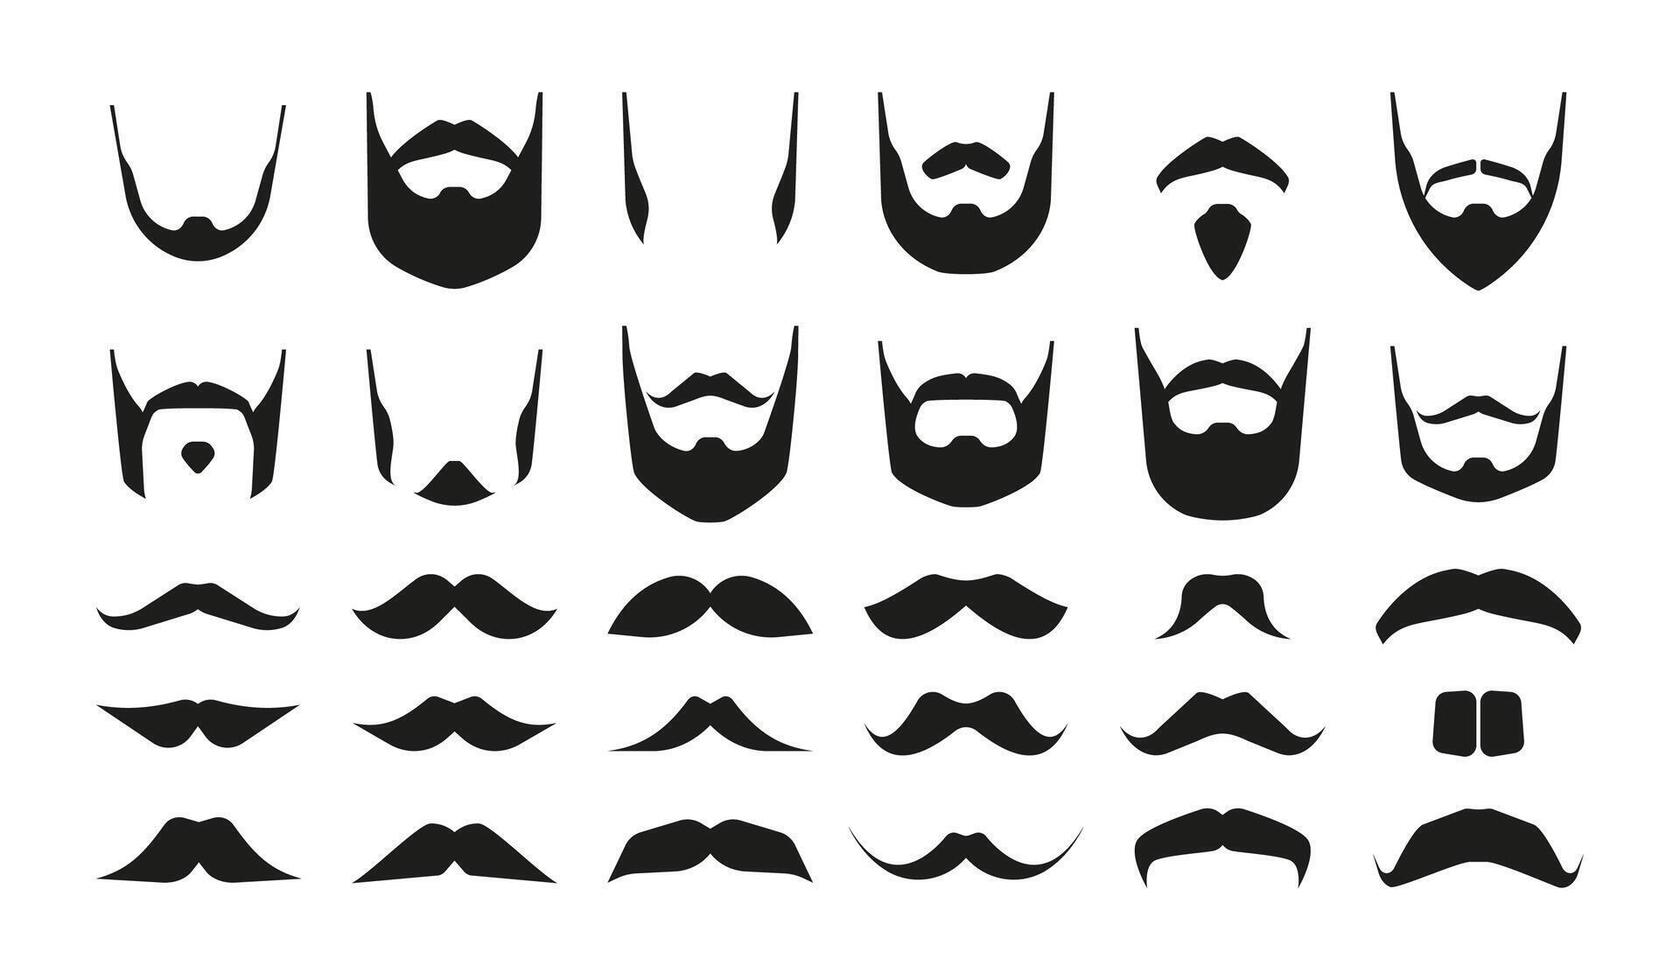 bigotes y barbas hipster negro bigotudo barbado caras, sencillo masculino símbolos diferente variaciones para Barbero logo. vector aislado conjunto